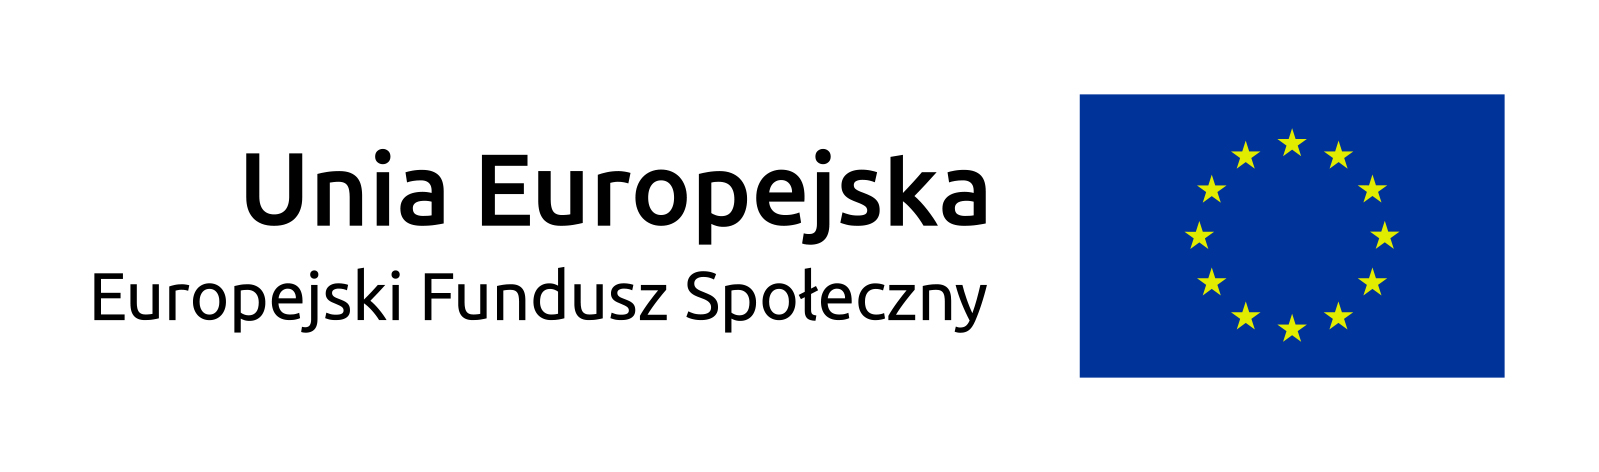 Znalezione obrazy dla zapytania unia europejska logo